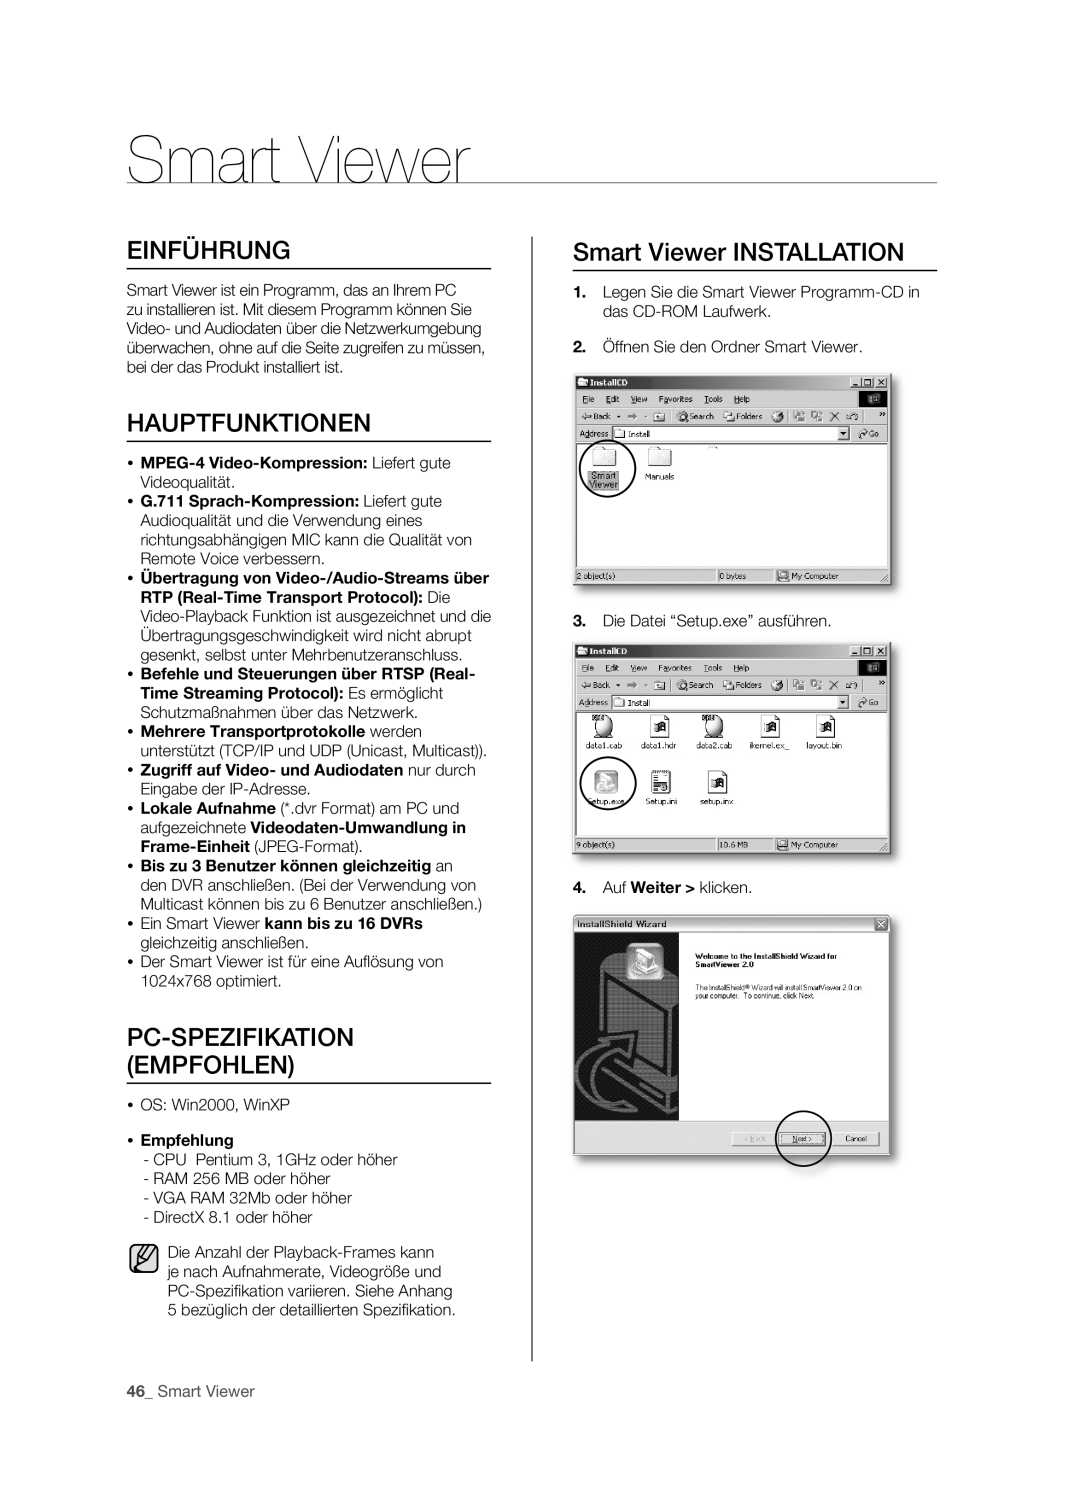 Samsung SHR-5162P/XEG Einführung, Hauptfunktionen, Pc-Spezifikation Empfohlen, Smart Viewer INSTALLATION,  Empfehlung 